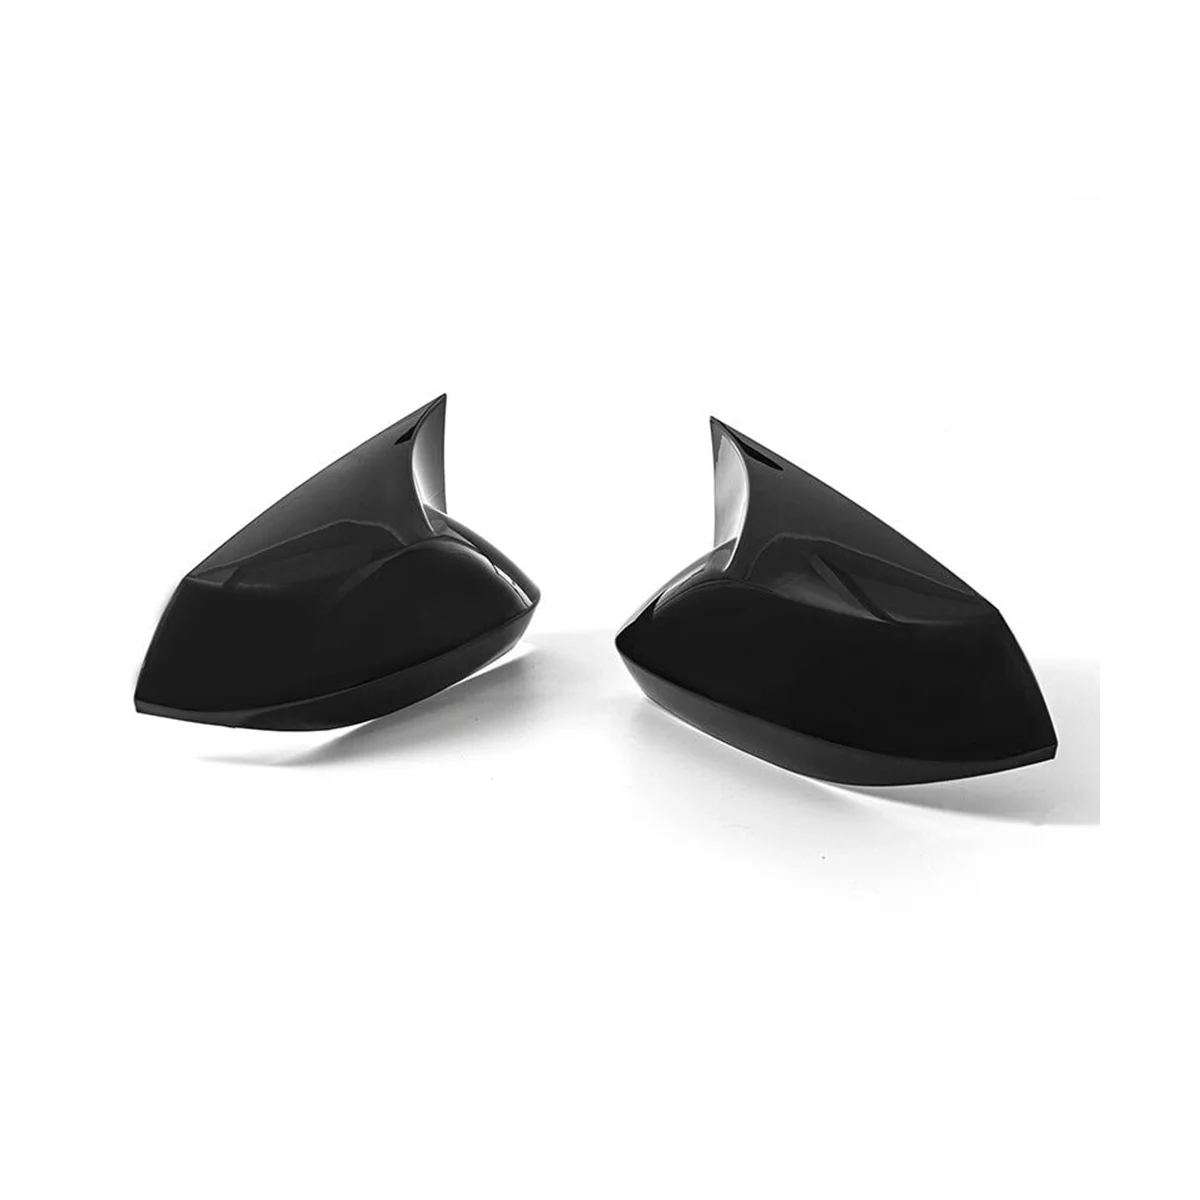 Parlak Siyah ÖKÜZ Boynuz Dikiz Aynası Kapağı Cap Trim Toyota Corolla için